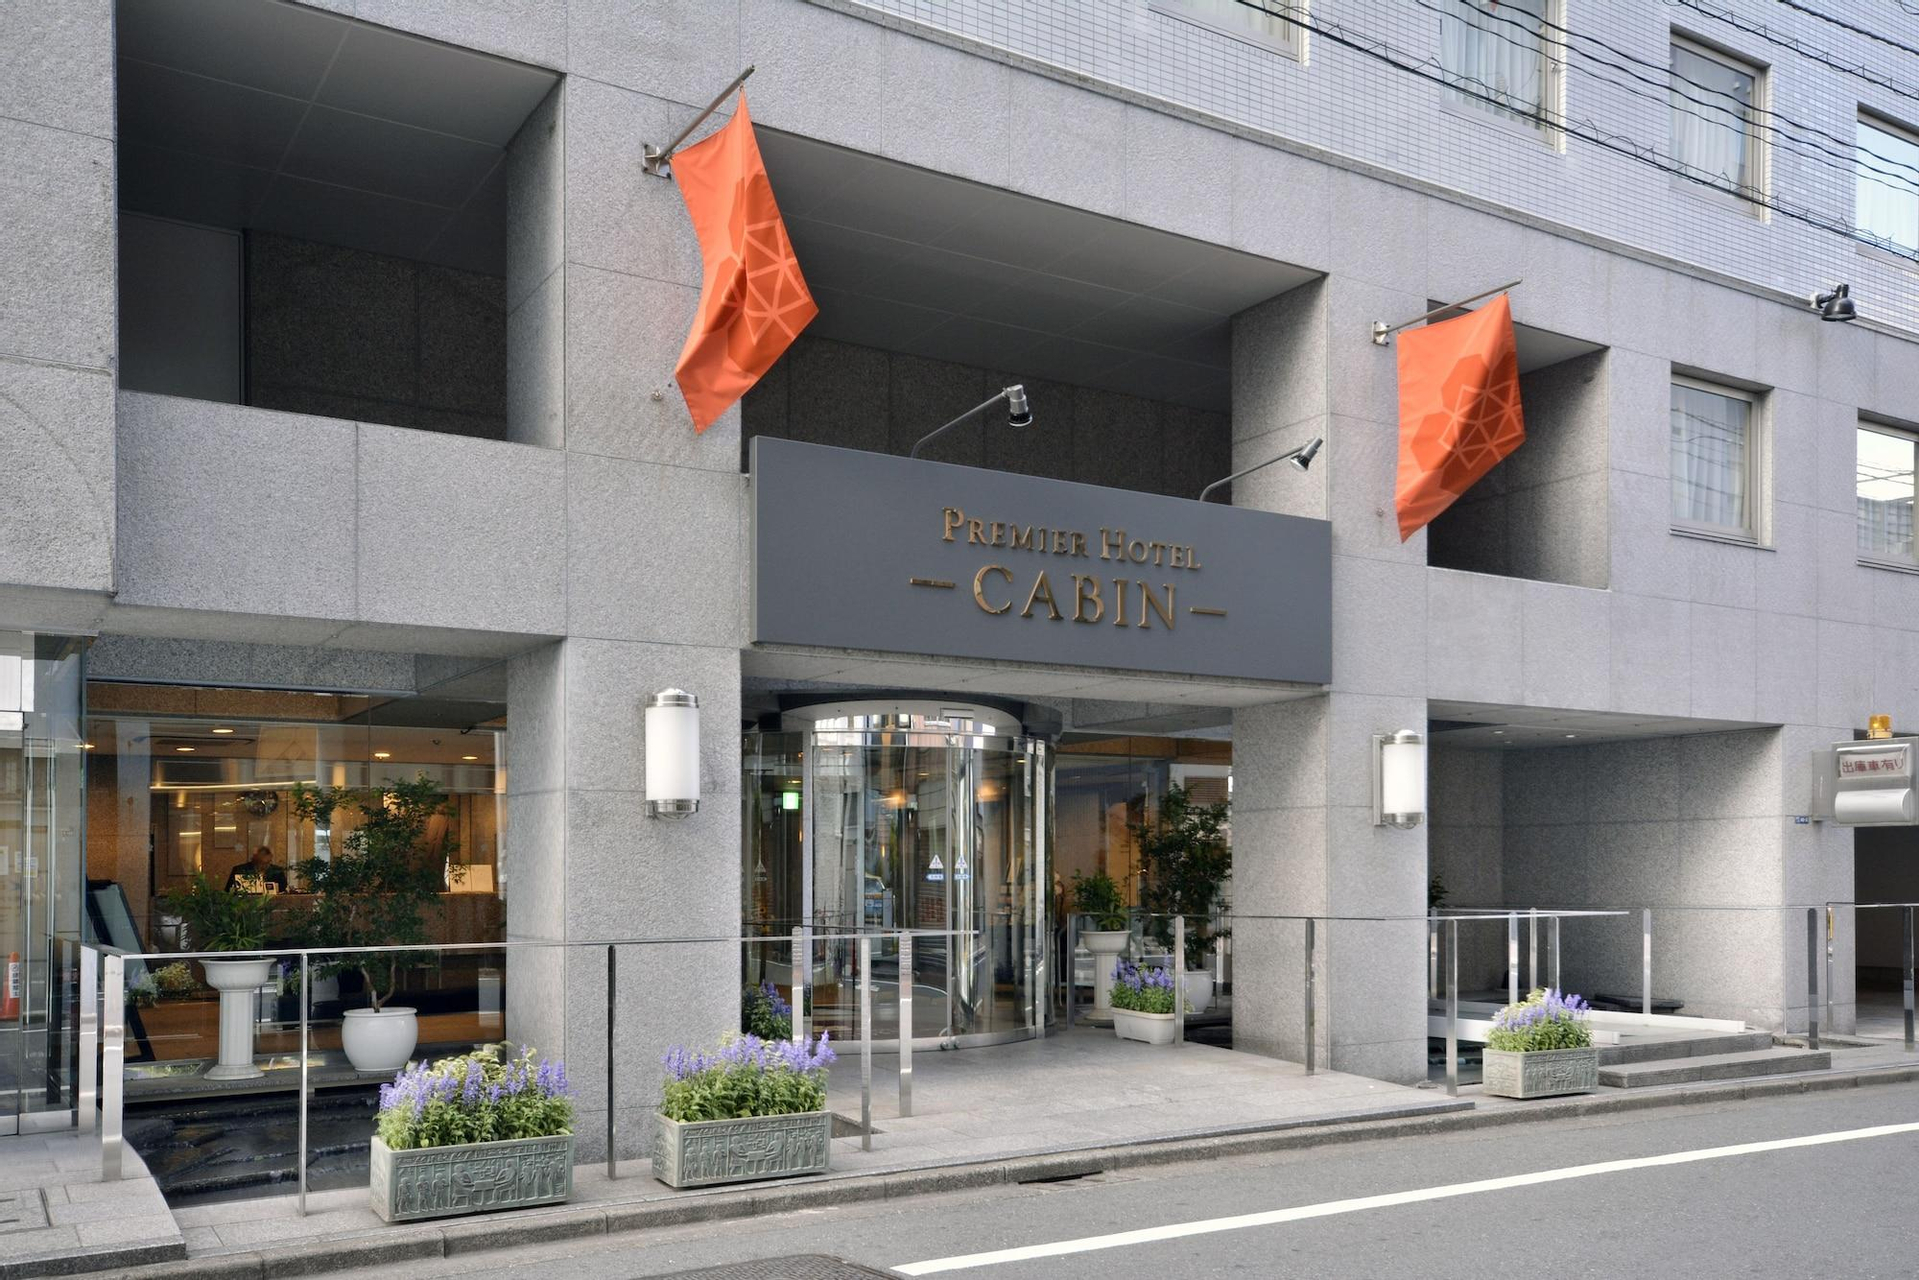 Exterior & Views 1, Premier Hotel -CABIN - Shinjuku, Shinjuku